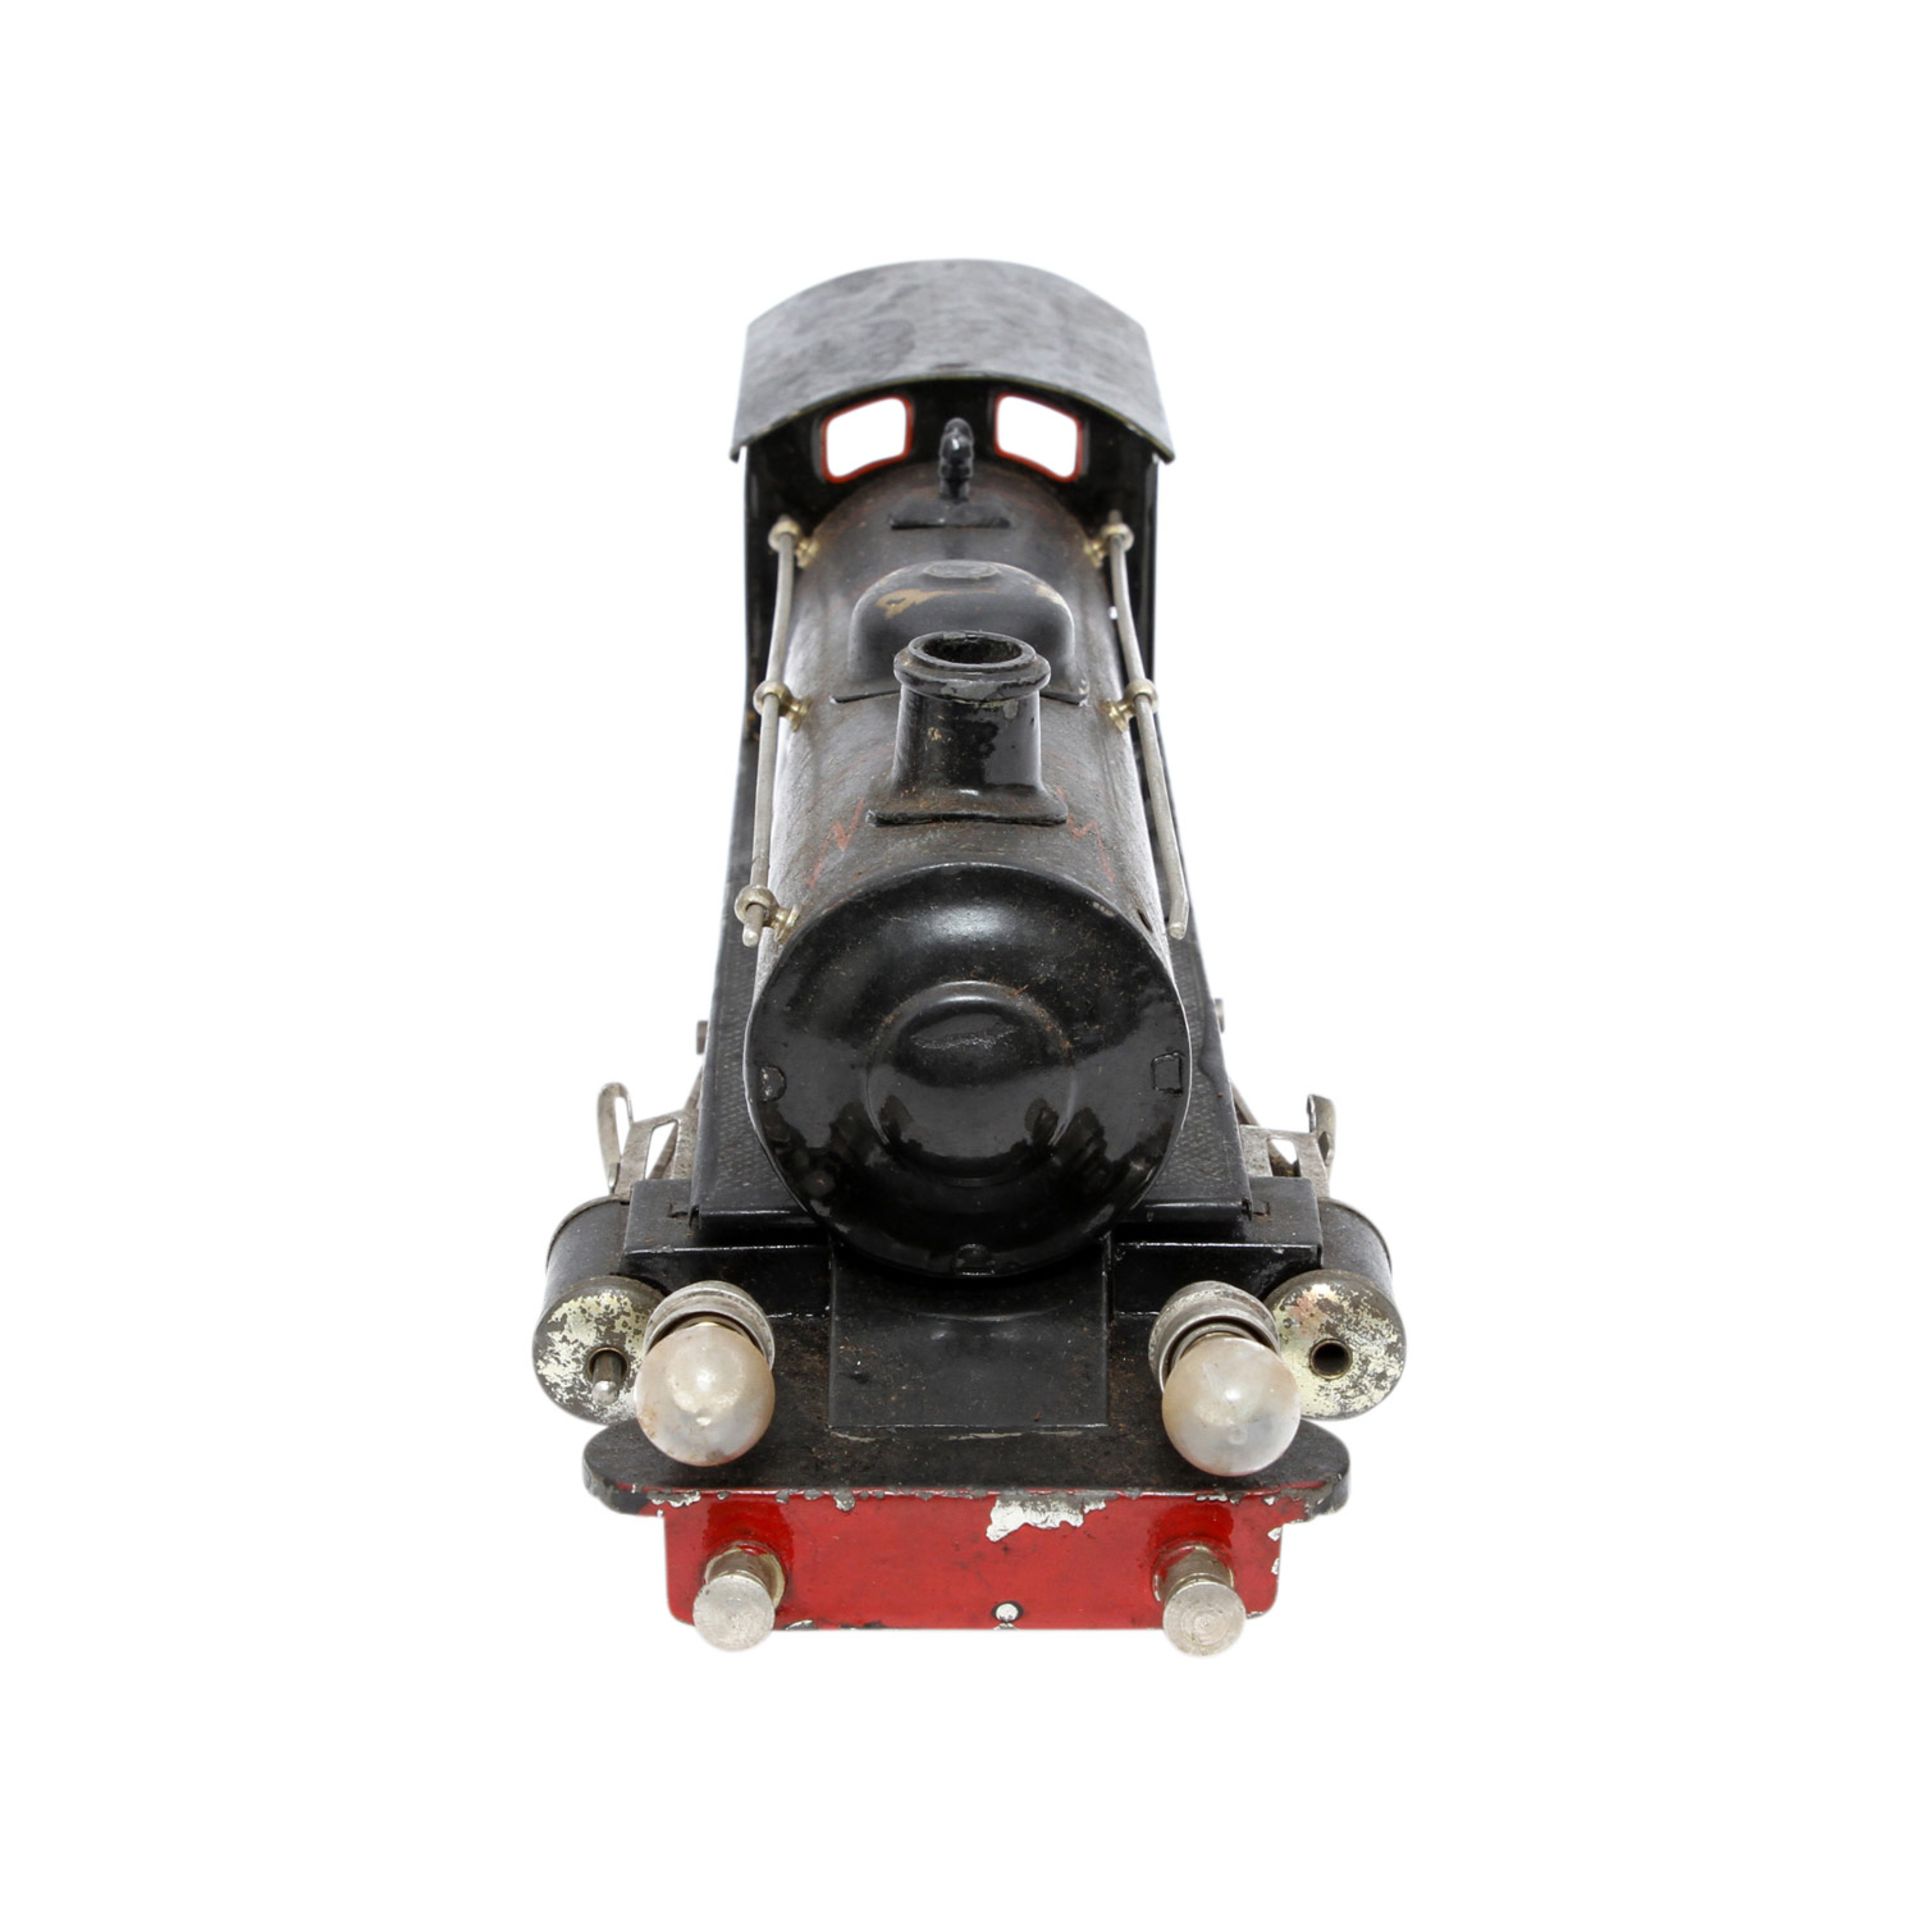 MÄRKLIN 20 Volt-Dampflok E 65/13041, Spur 1, 1926-1931, schwarz lithogr., vor- u. rückwärtsfahrend - Image 5 of 10